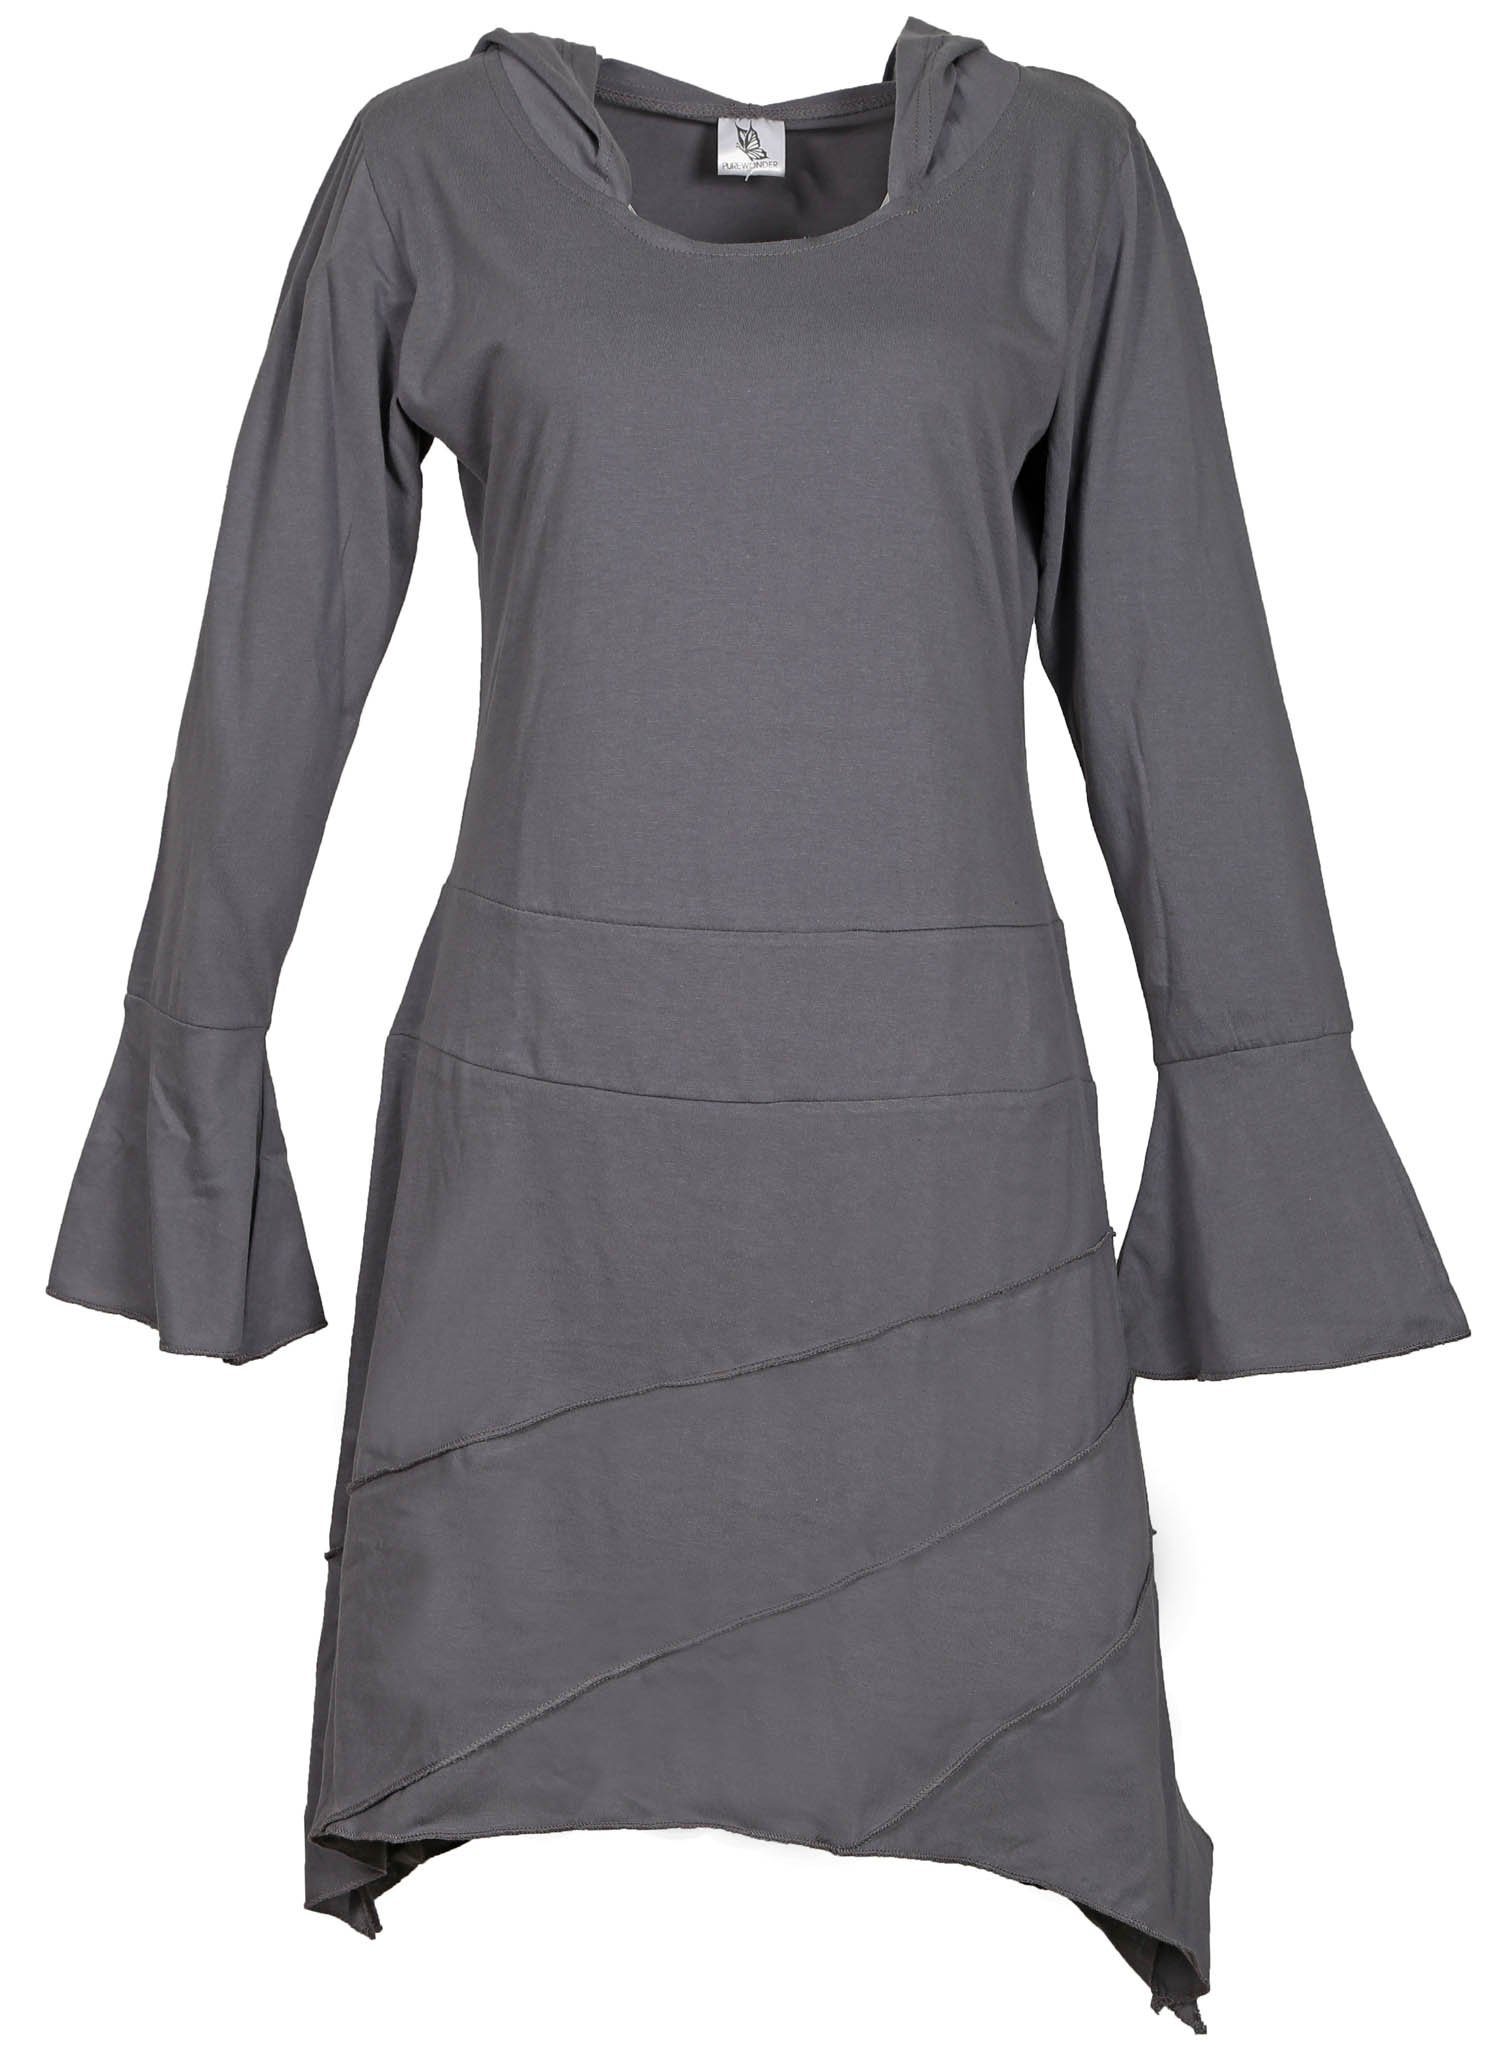 PUREWONDER Tunikakleid Sommerkleid aus leichtem Jersey Tunika mit Zipfelkapuze Grau